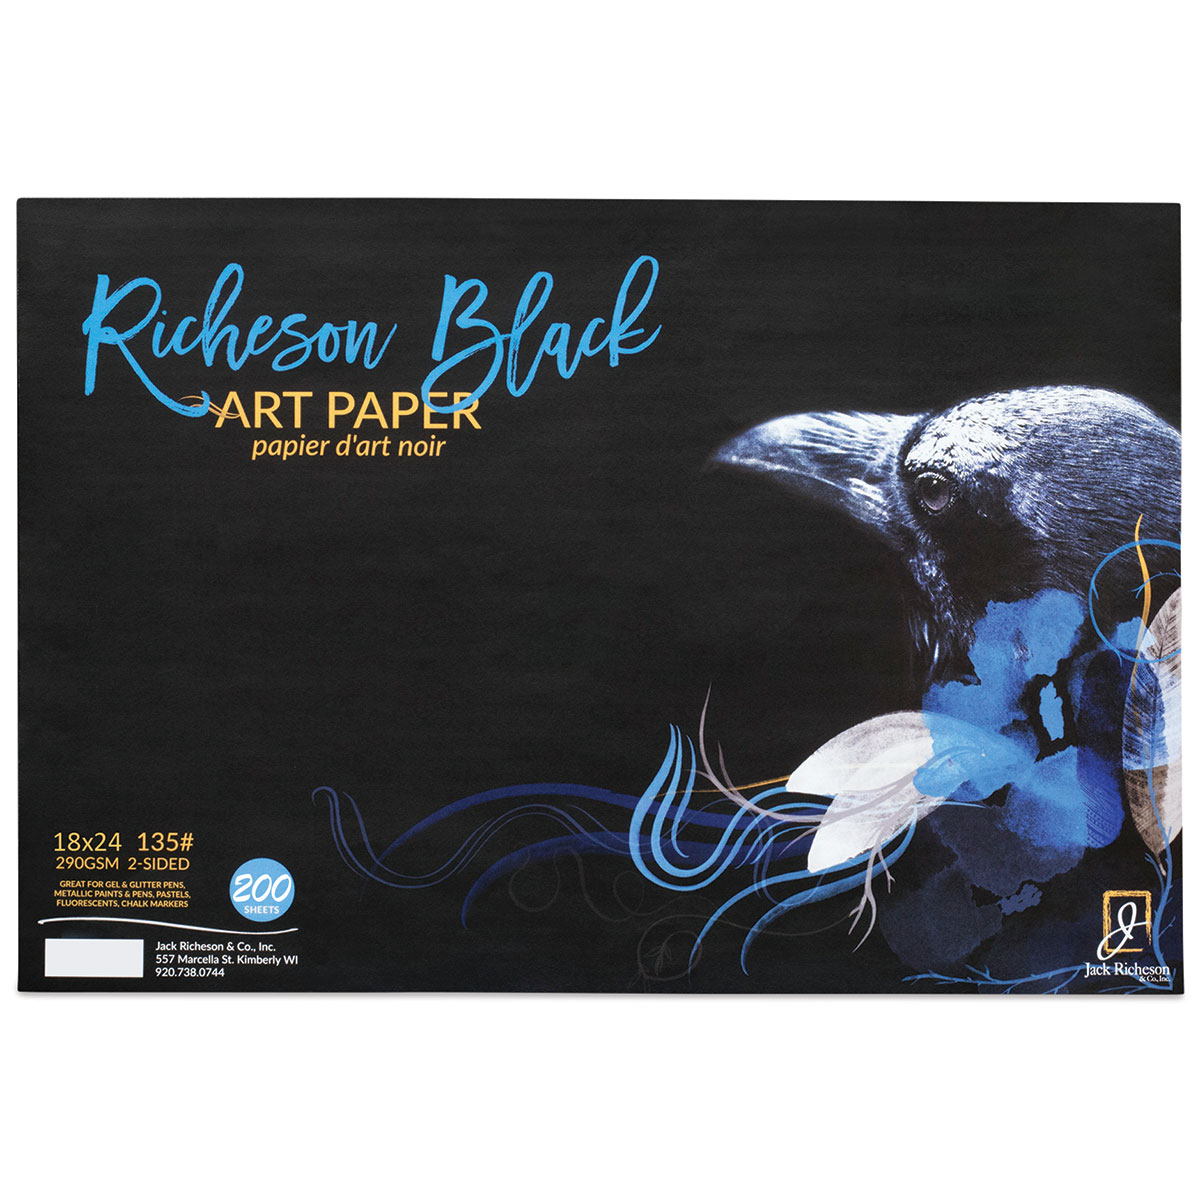 Blick Palette Paper Pad - 18 x 24, 50 Sheets